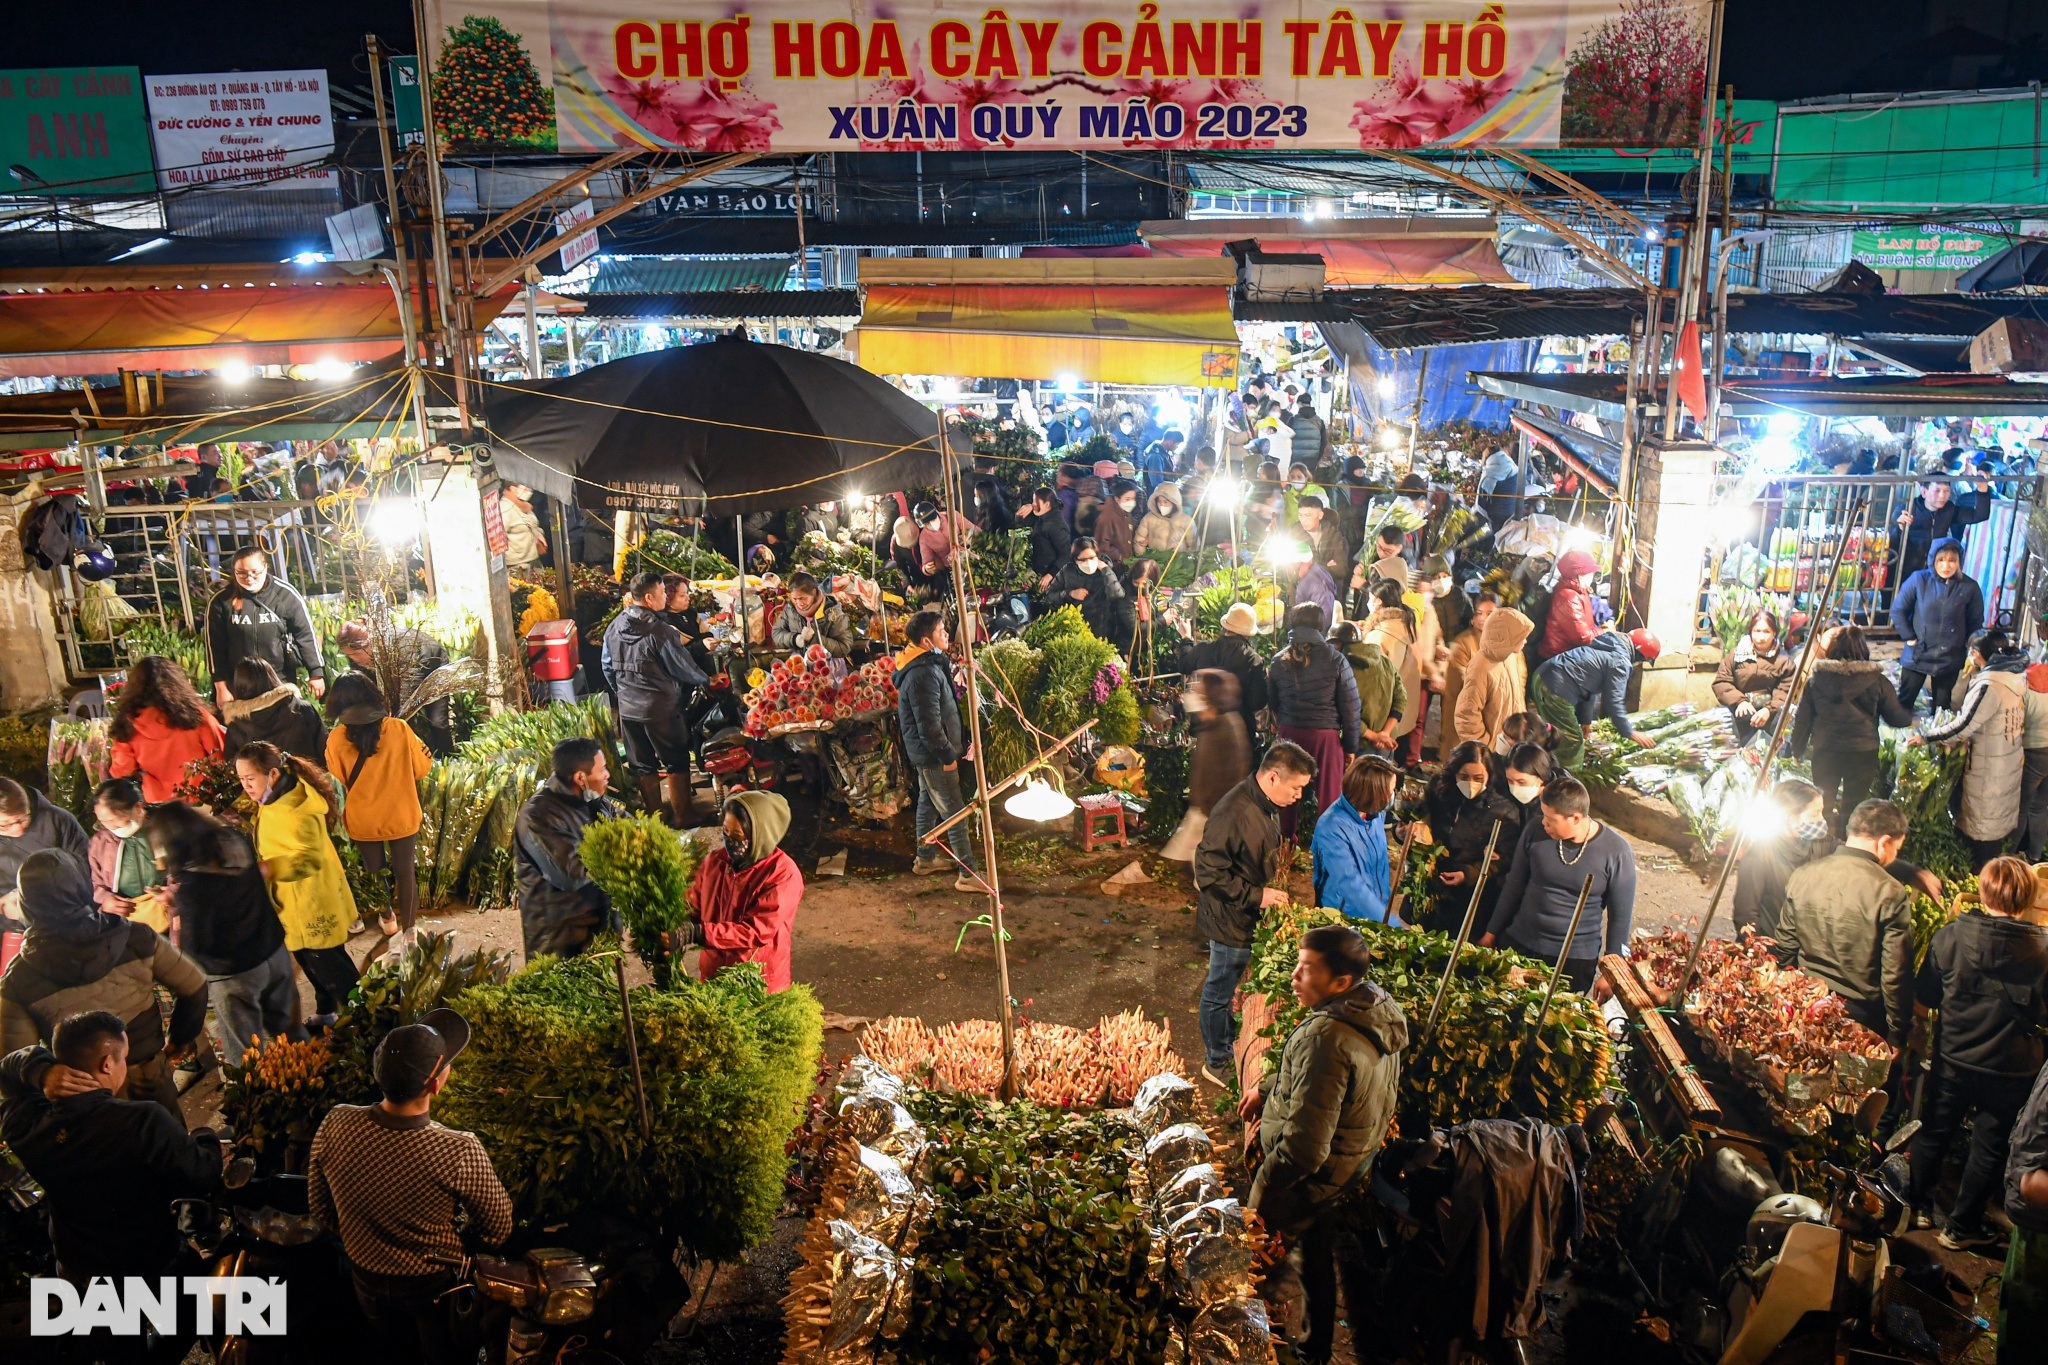 Đông nghịt người chen chân giữa đêm mua bán tại chợ hoa lớn nhất Hà Nội - 6